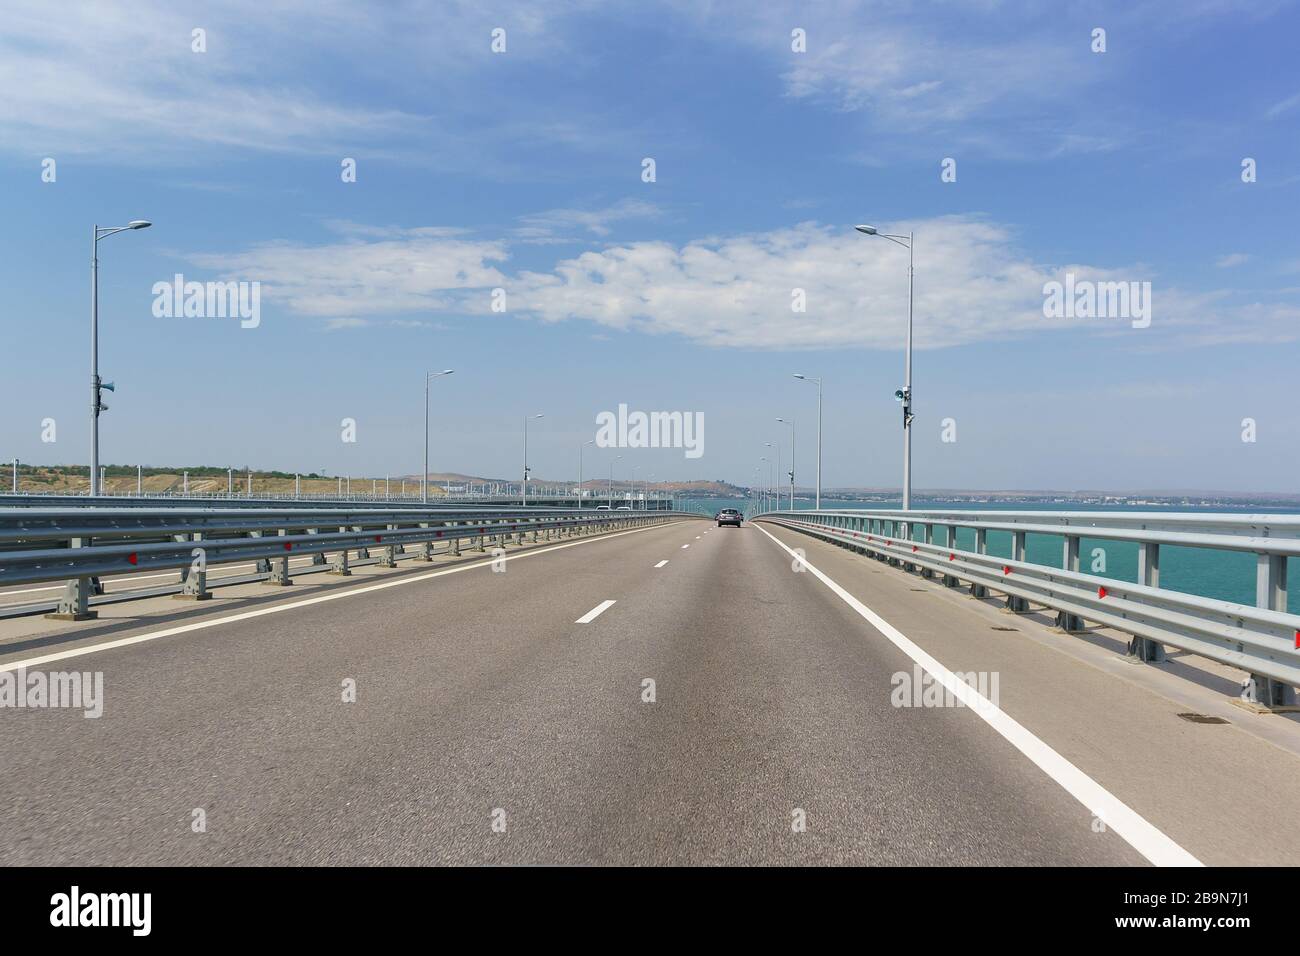 Pont de Crimée traversant le détroit de Kerch. Descente à partir de la hauteur de la portée de la voûte navigable. Avant Kerch. Journée d'été ensoleillée Banque D'Images